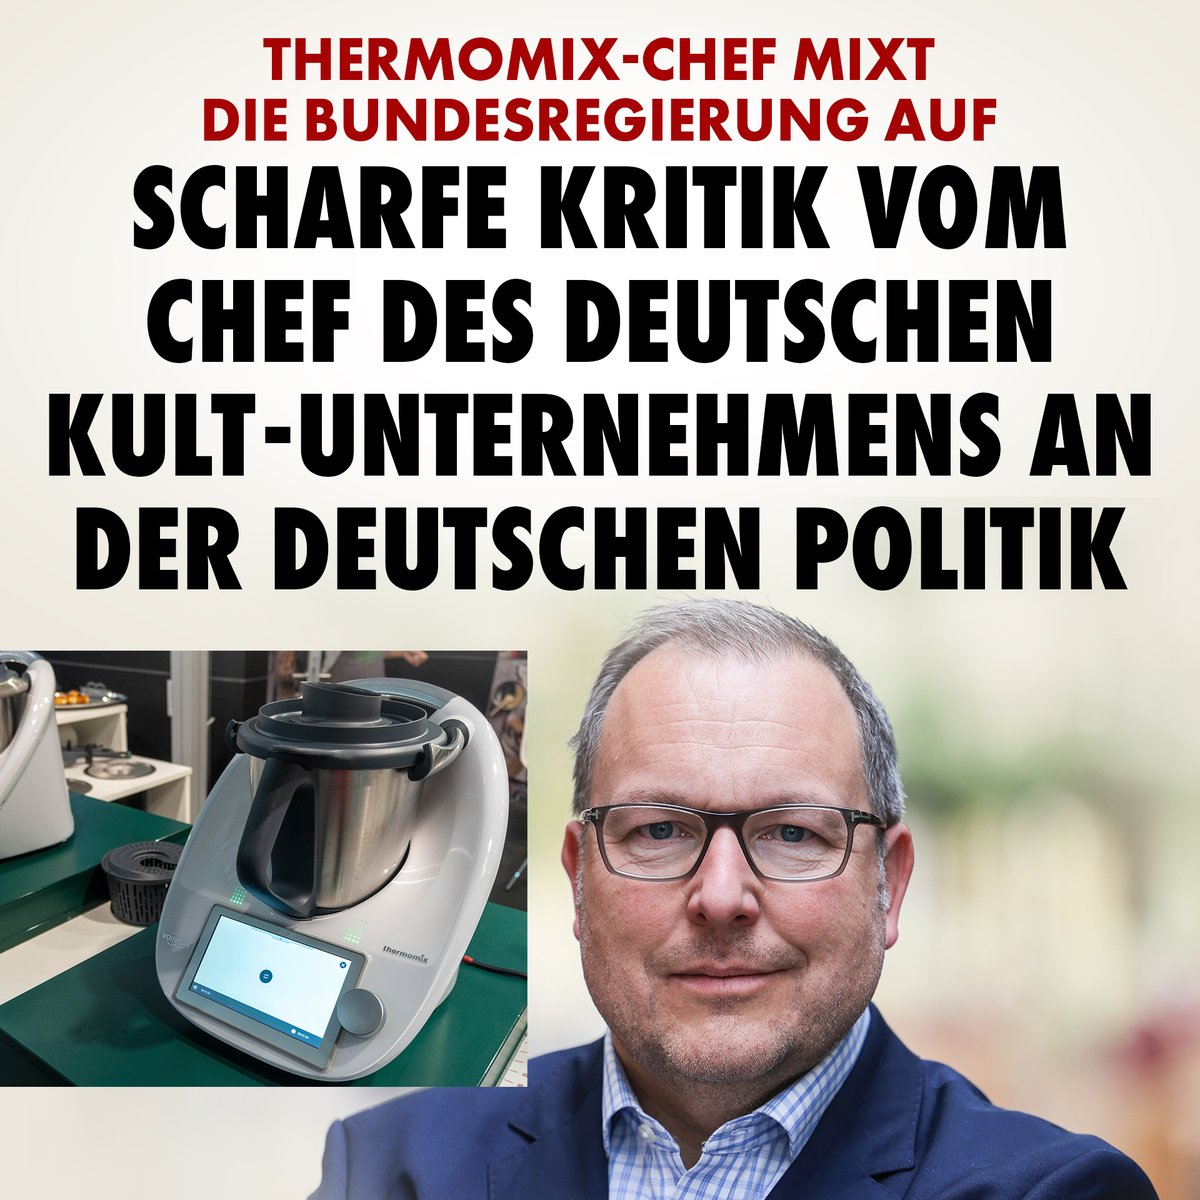 Thomas Stoffmehl, Vorstandssprecher des Unternehmens Vorwerk aus Wuppertal, das den Thermomix produziert, kritisiert die deutsche Politik. nius.de/politik/thermo…